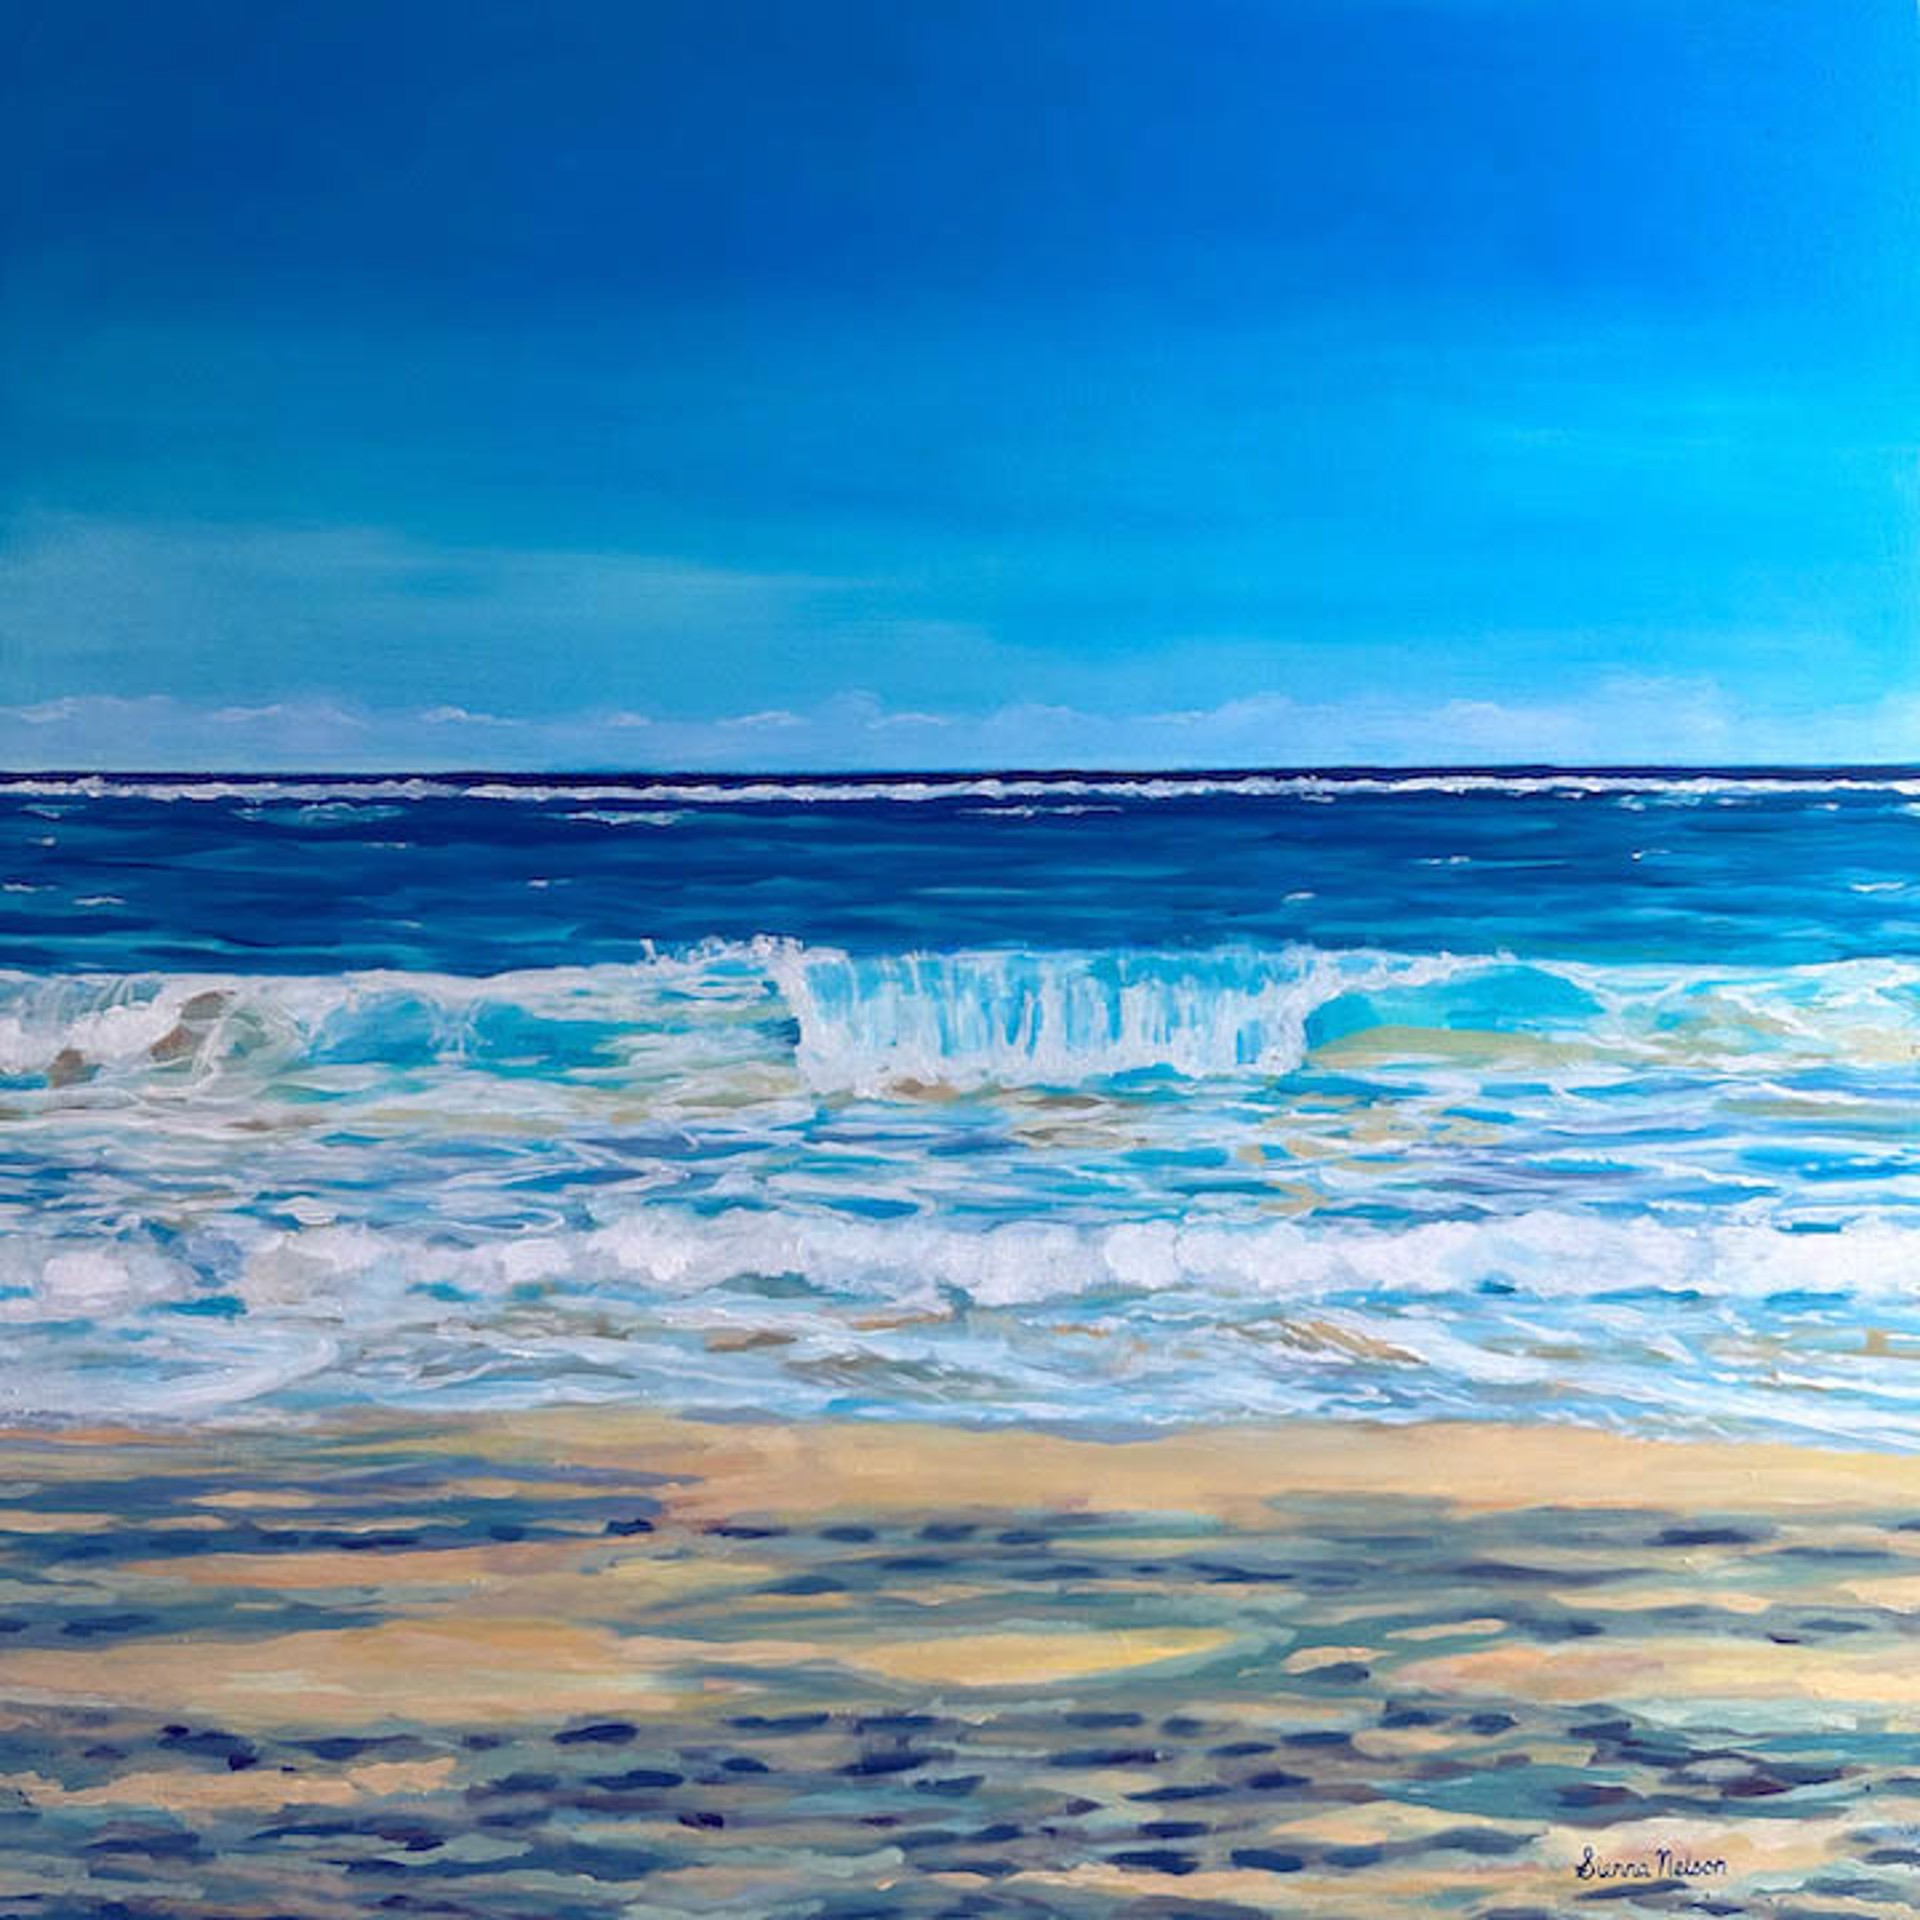 Cerulean Shorebreak by Sienna Nelson